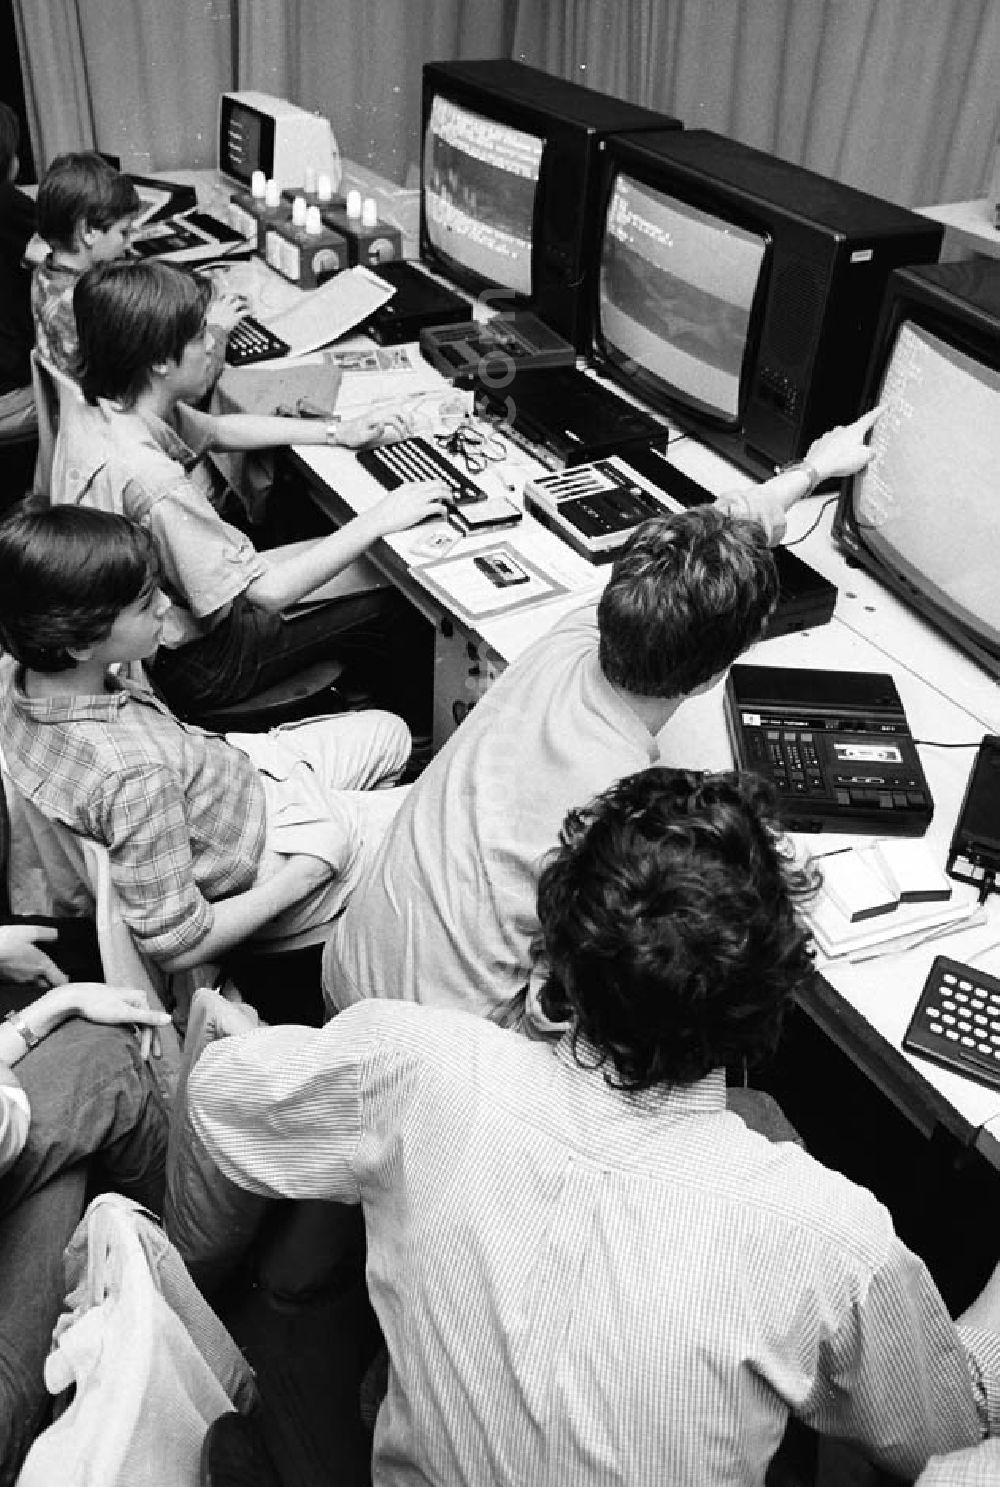 GDR picture archive: - Arbeitsgemeinschaft Monitore im Pionierpalast Ernst Thälmann in der Wuhlheide. Blick von oben auf Kinder sitzen zusammen vor Fernseher / Monitoren / Computer.